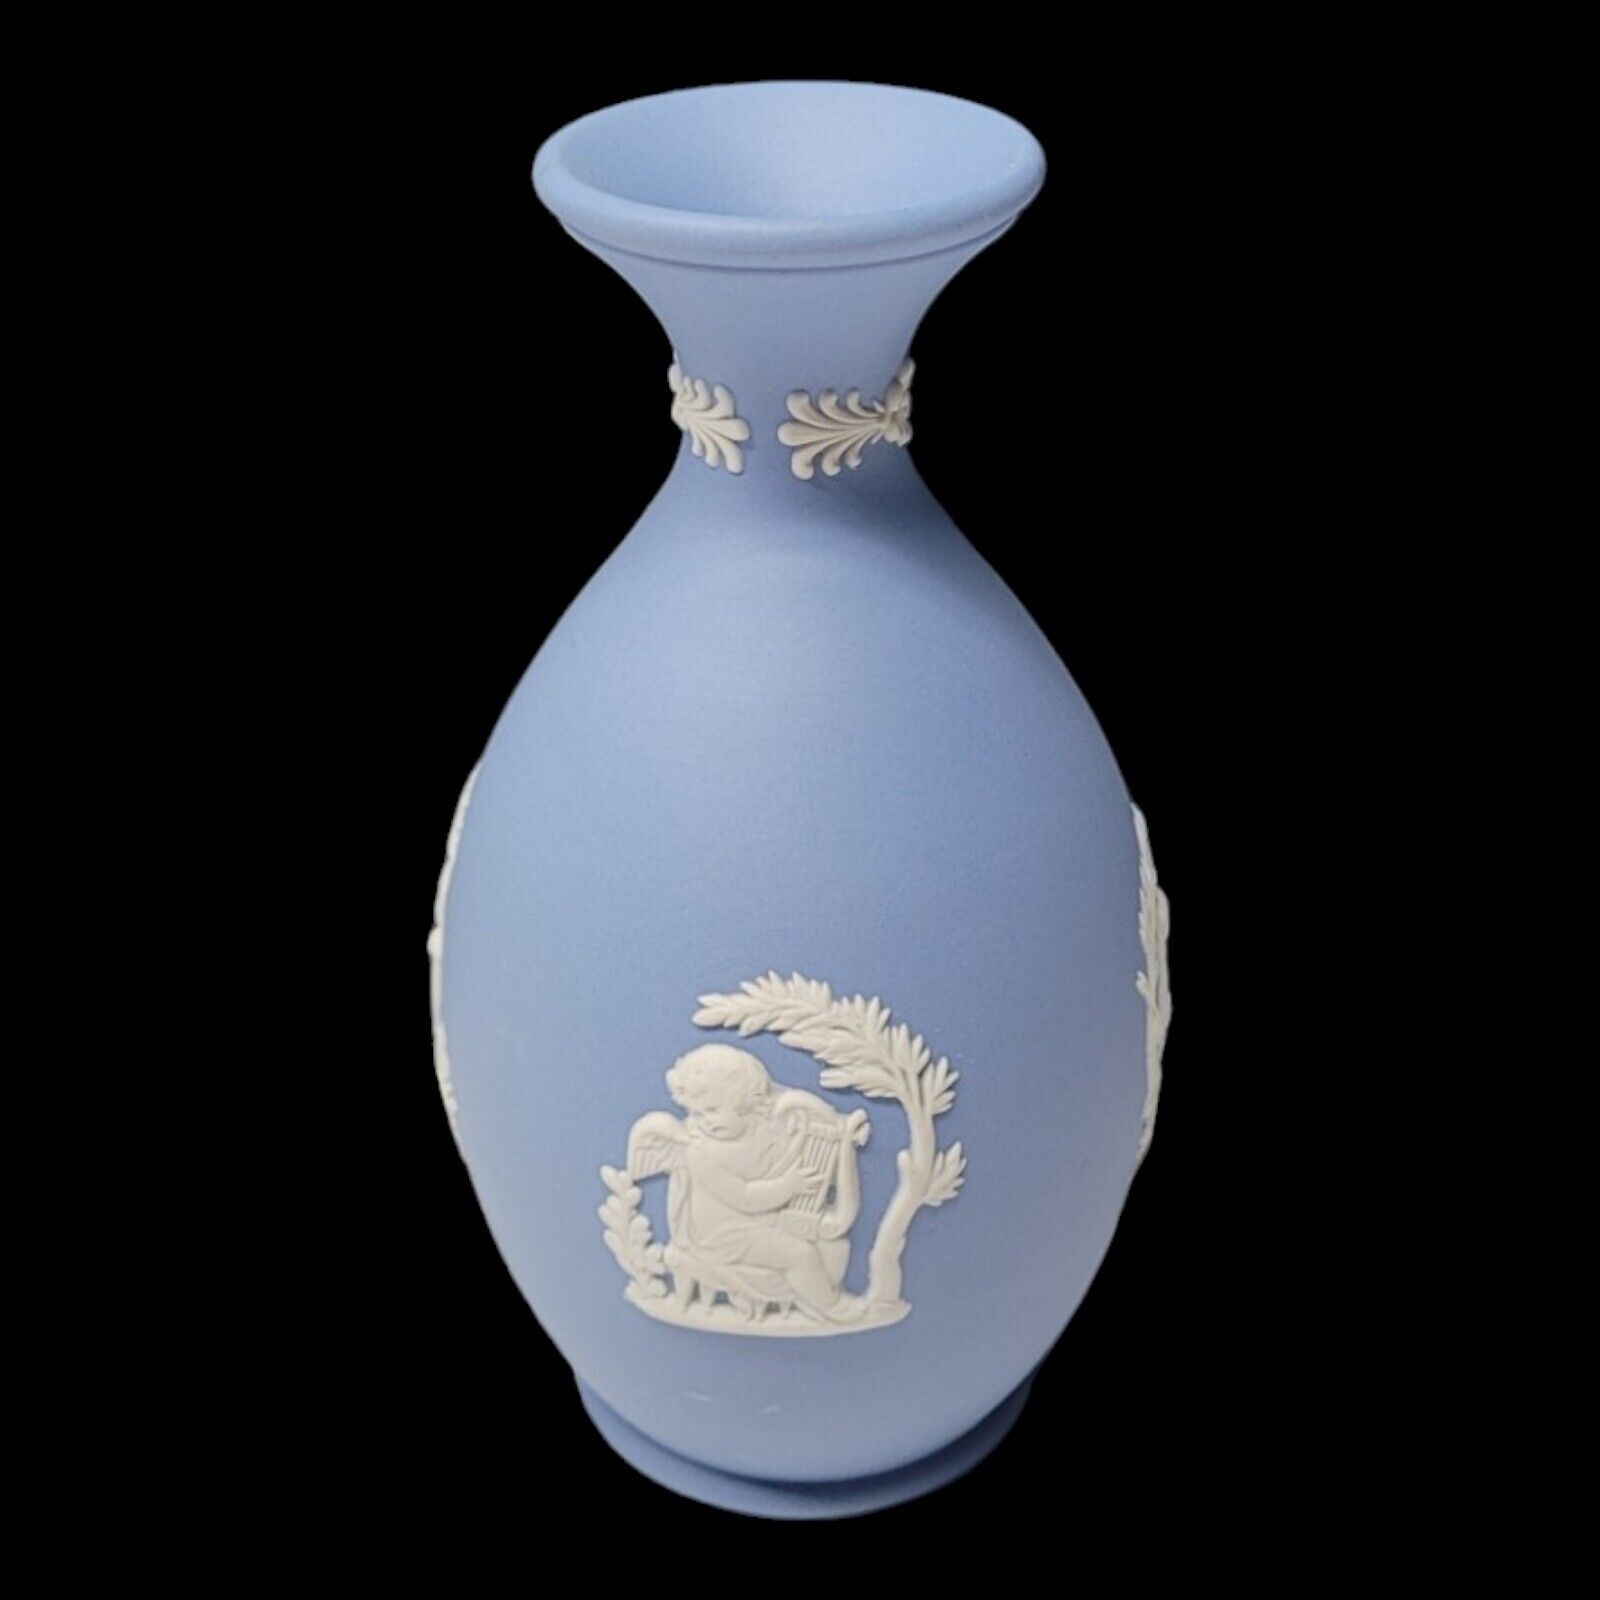 Vintage Wedgwood Blue Jasperware Bud Vase White Cameo - 5” Tall  